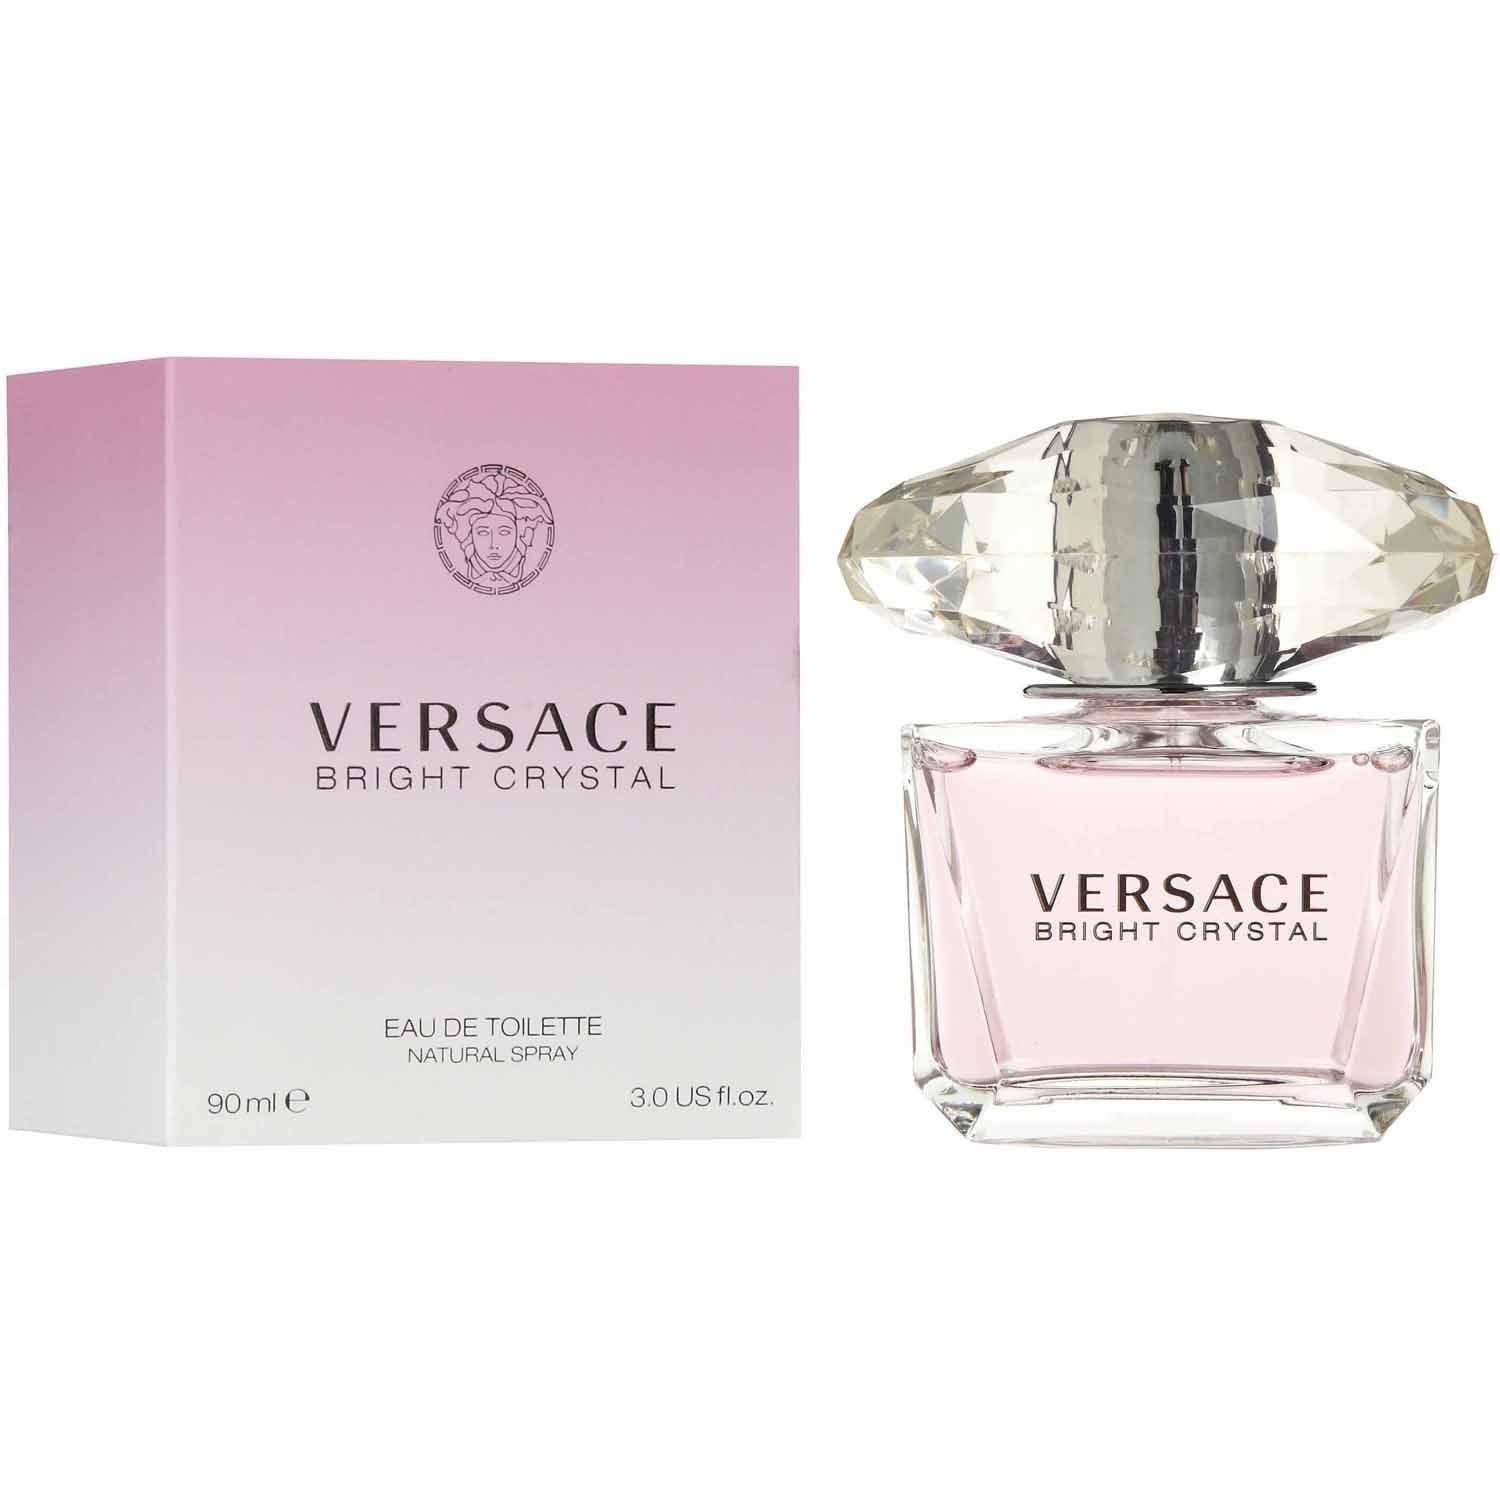 versace perfume bright crystal price